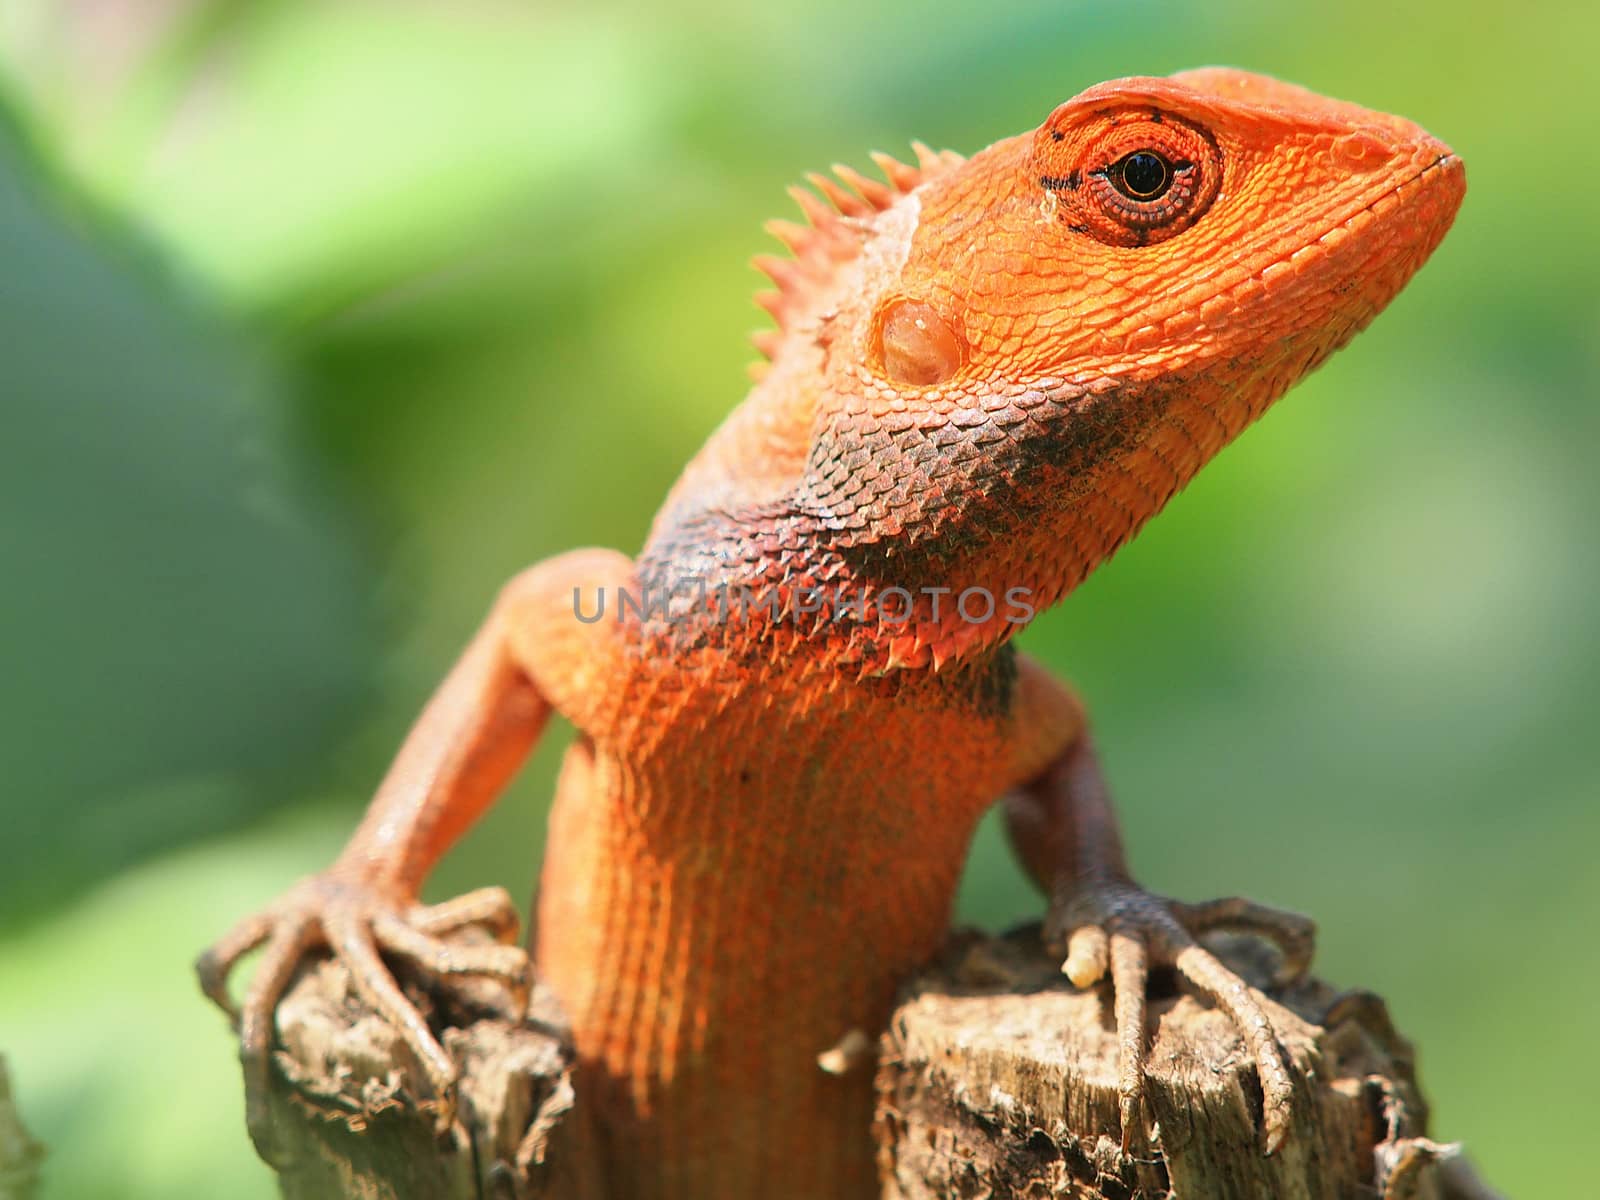 orange lizard by nevenm